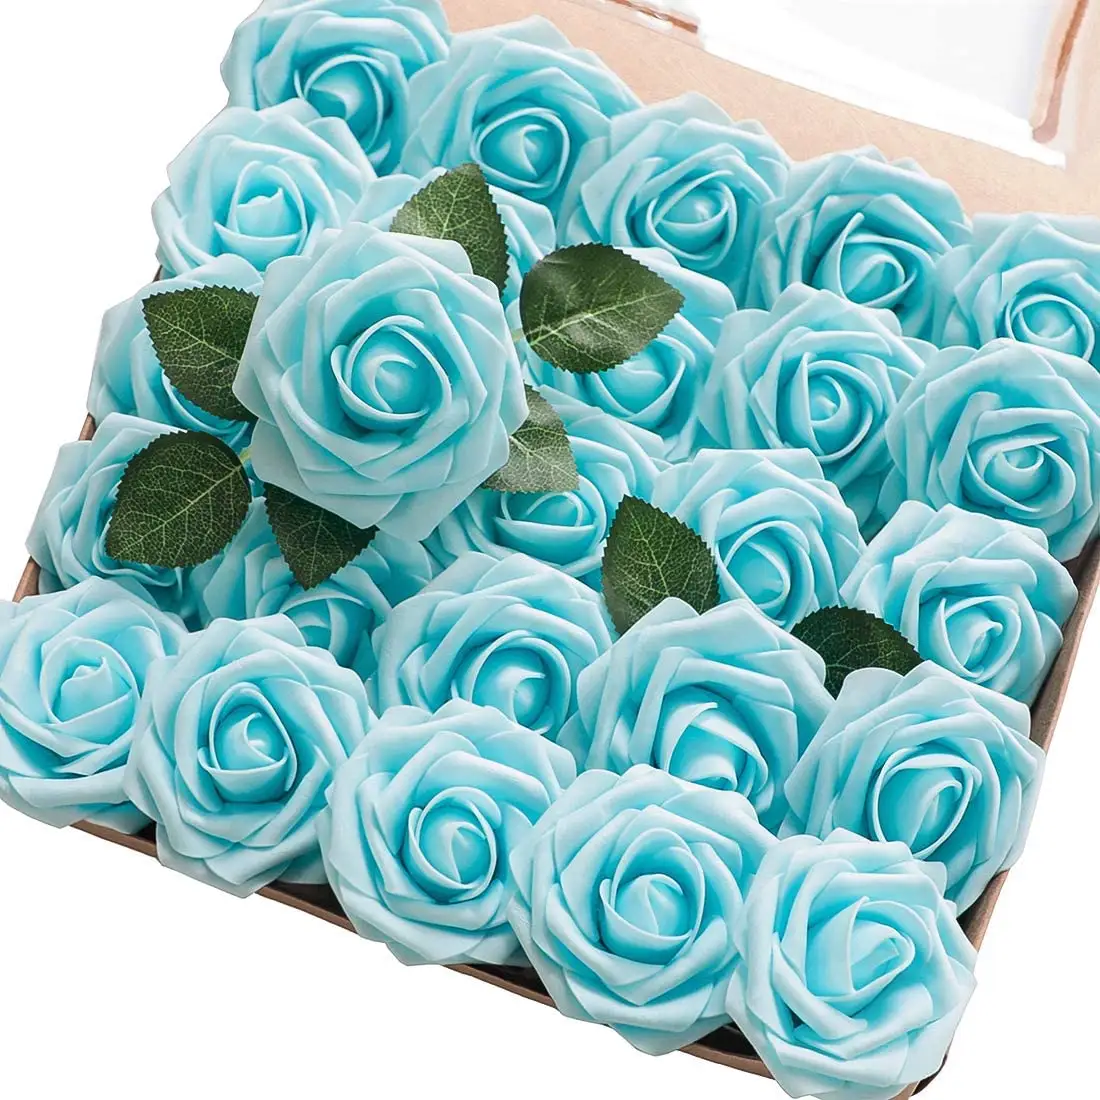 Commercio all'ingrosso 18 colori 25 pezzi di rose in schiuma di fiori artificiali dall'aspetto reale con steli per composizioni floreali fai da te decorazioni per la casa